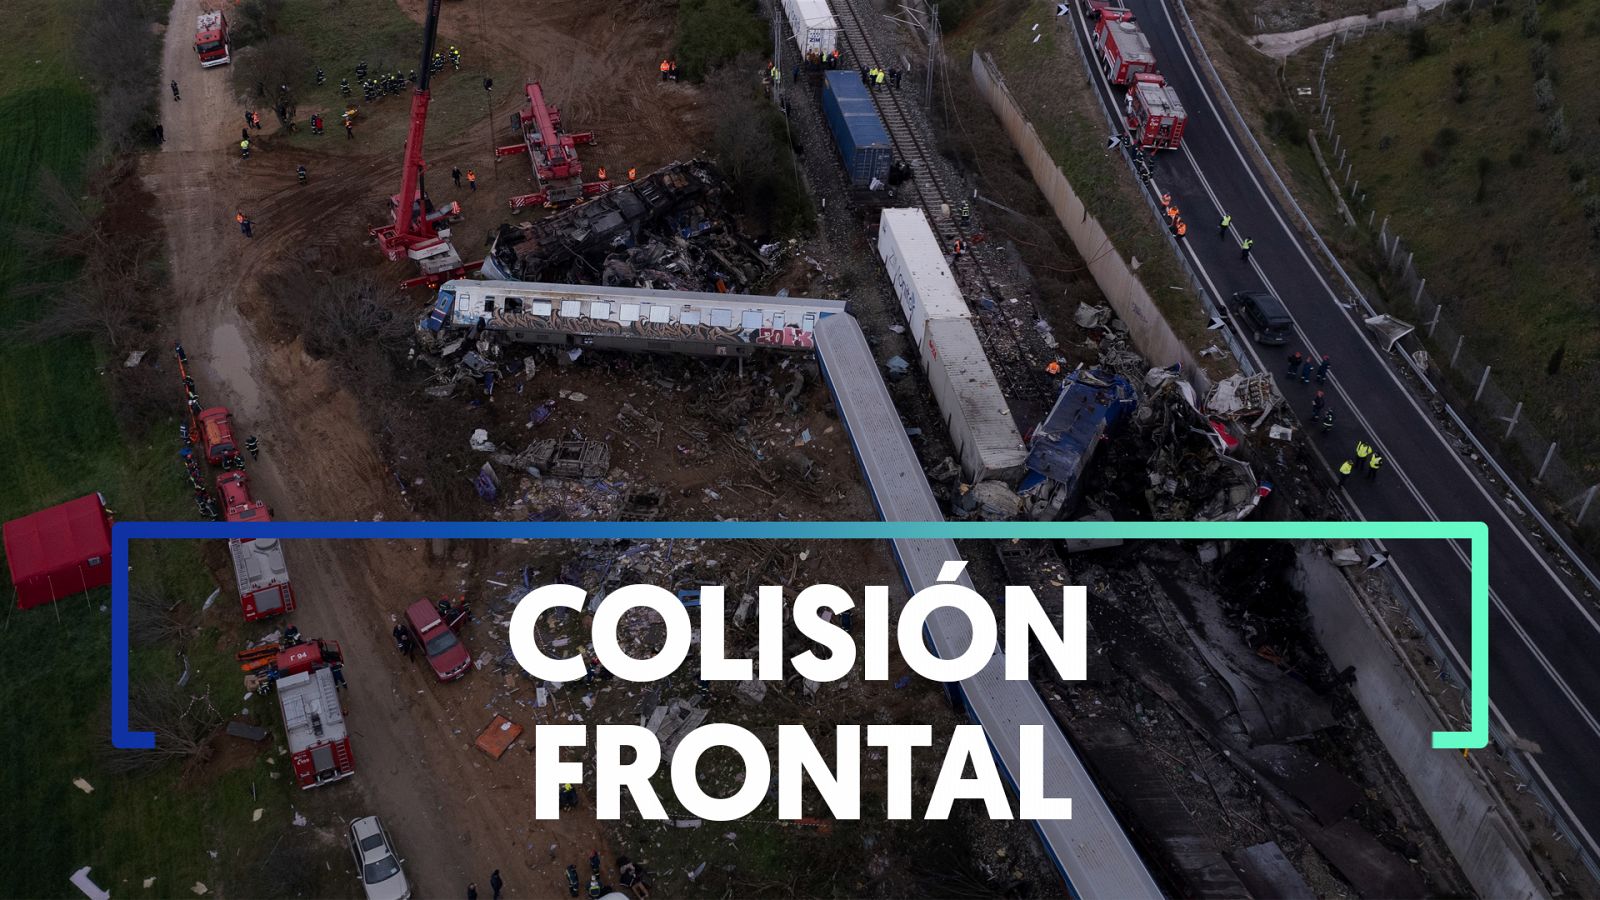 Un error humano, principal hipótesis del accidente ferroviario de Grecia